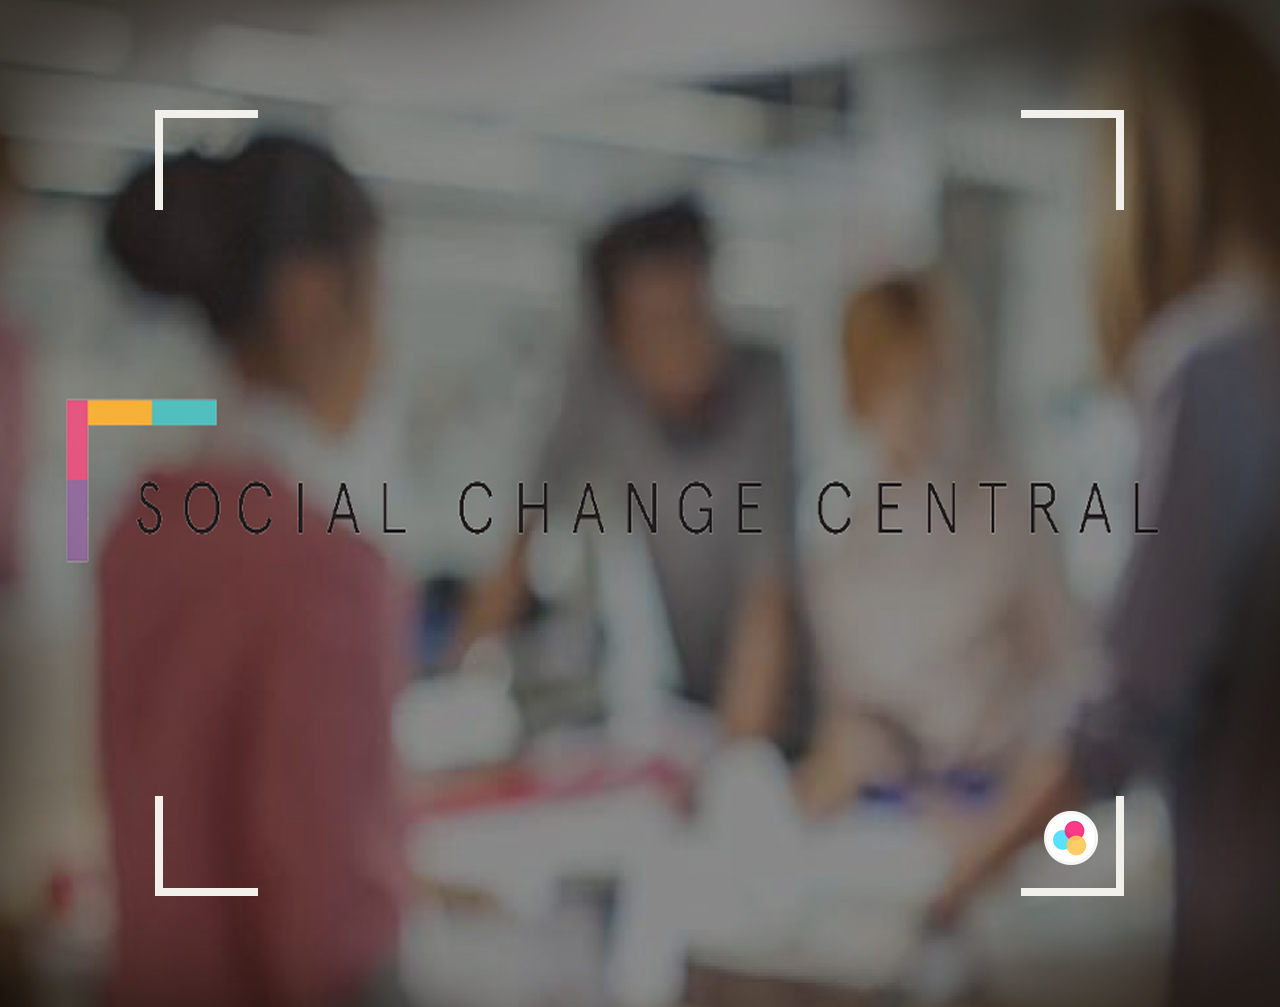 “مرکز تغییرات اجتماعی”، یک شتابدهنده آنلاین در استرالیا